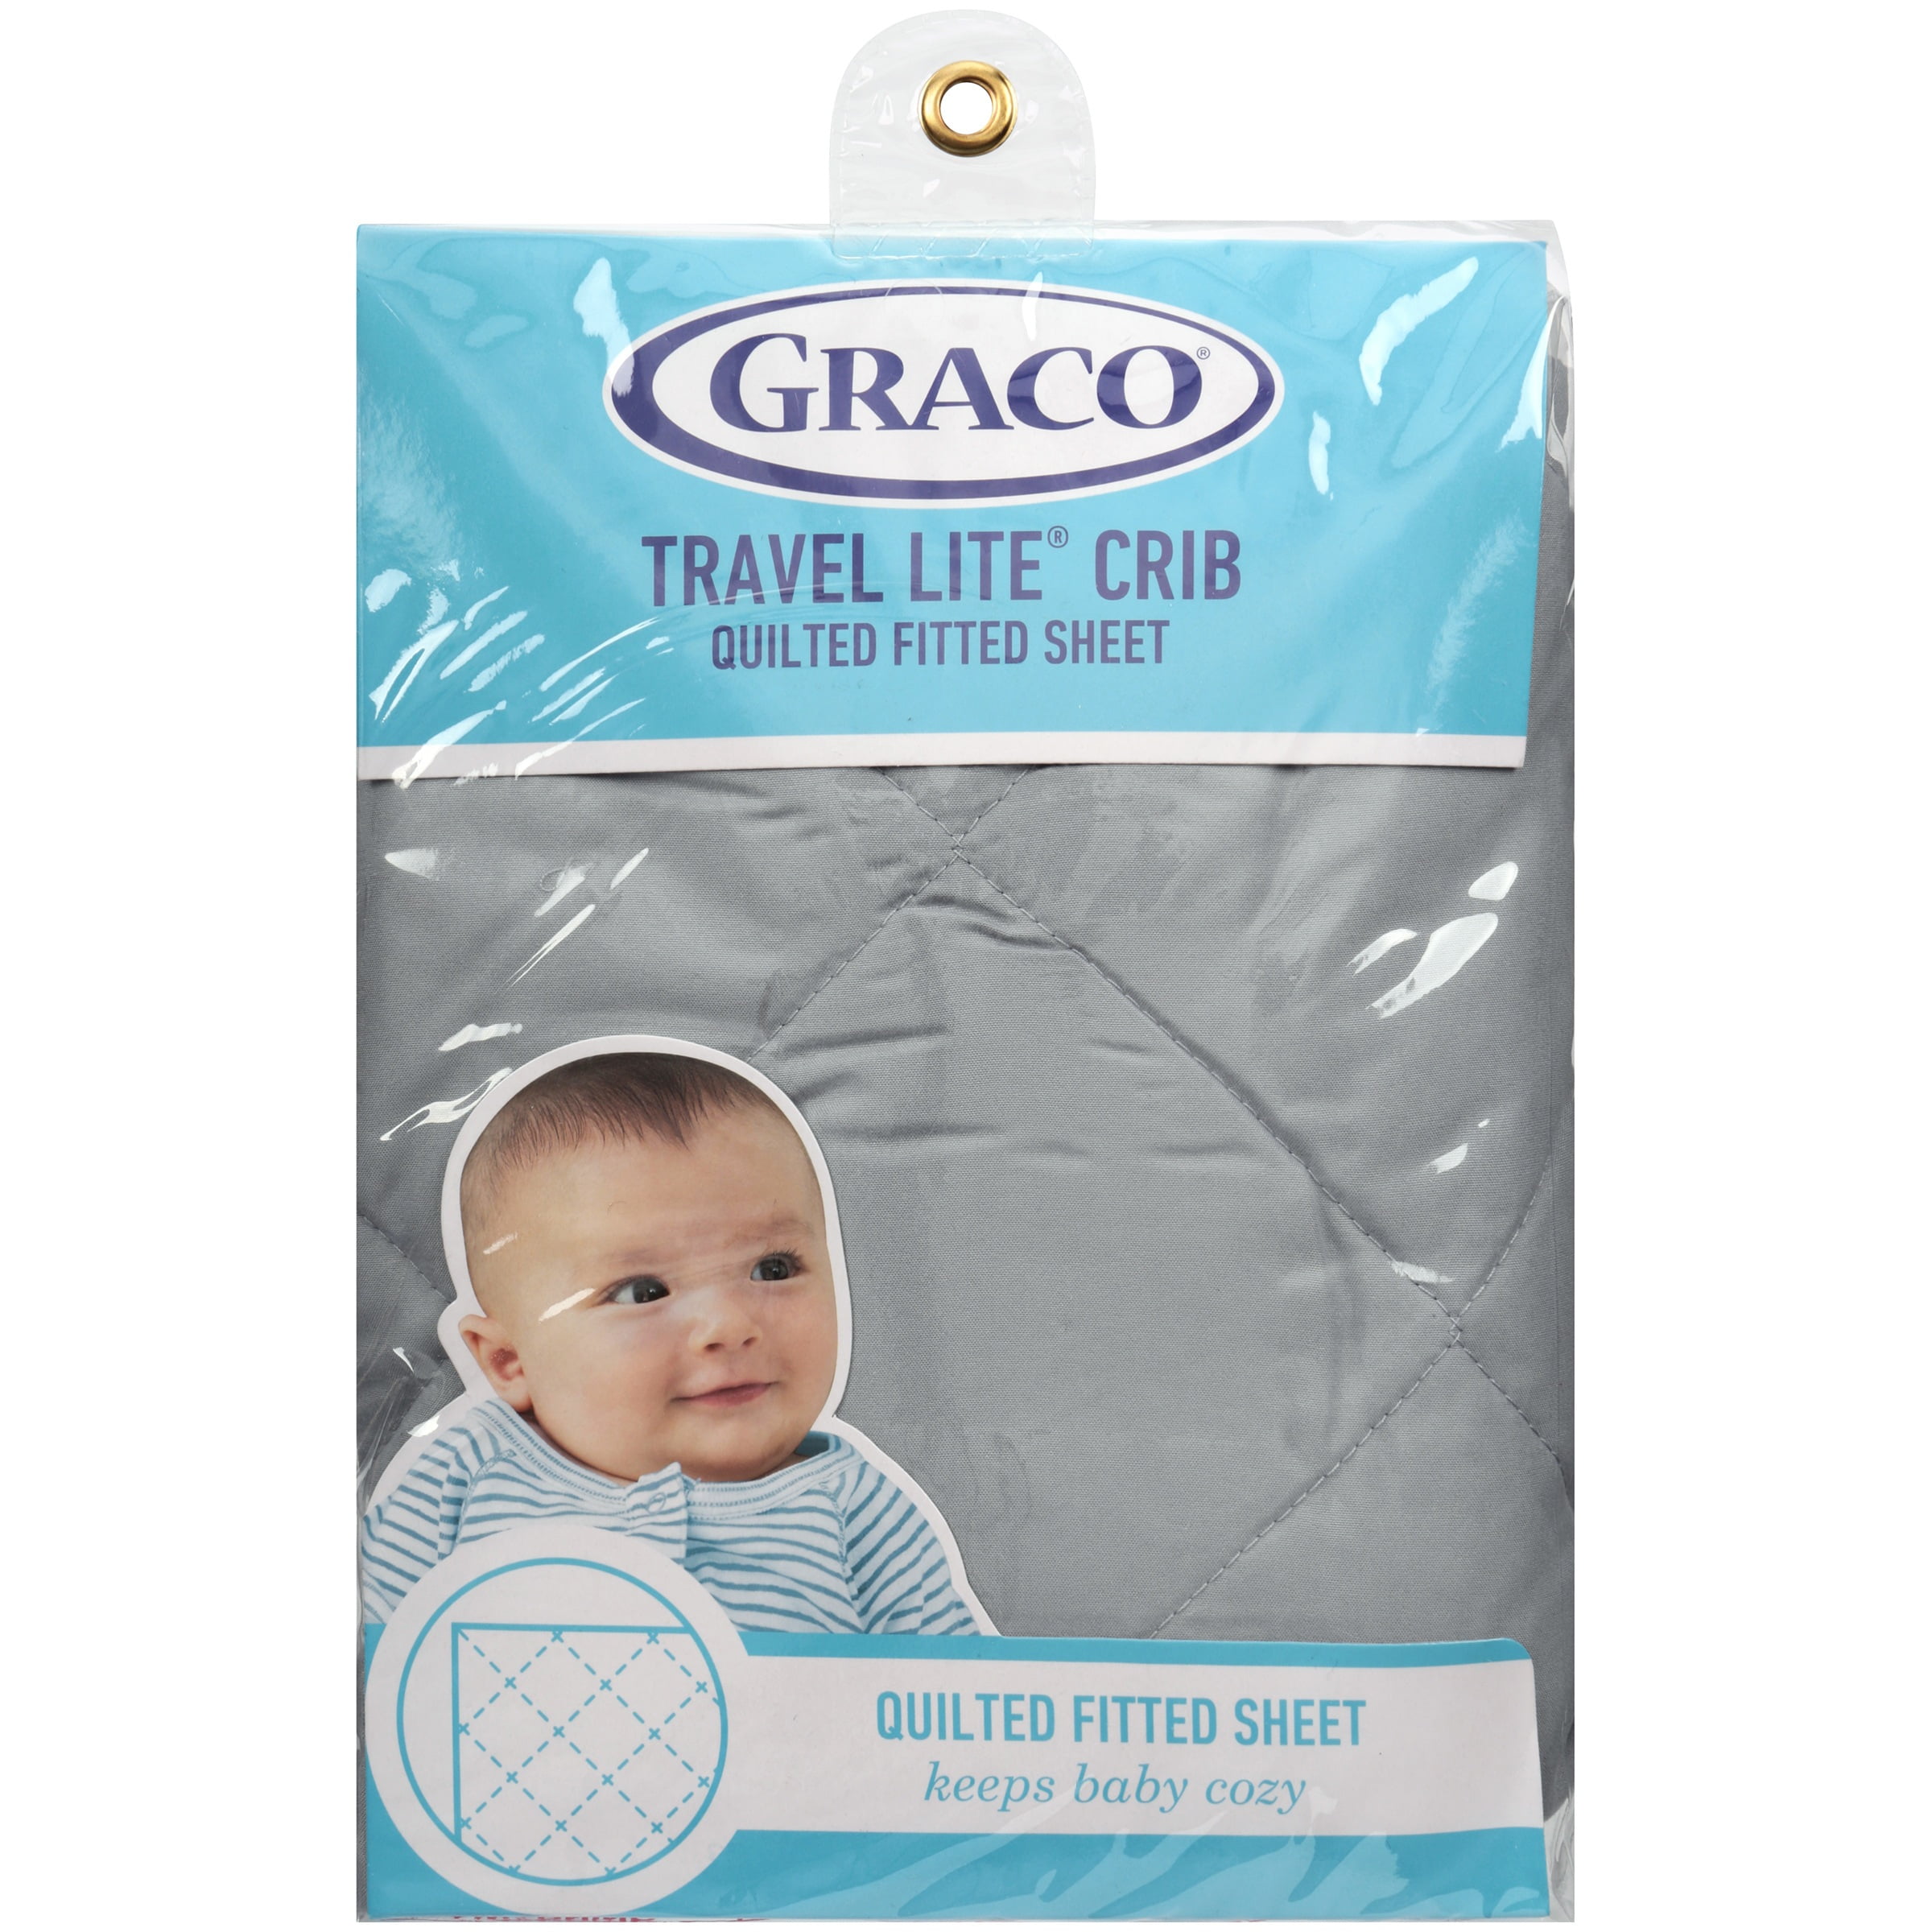 graco travel lite crib sheets